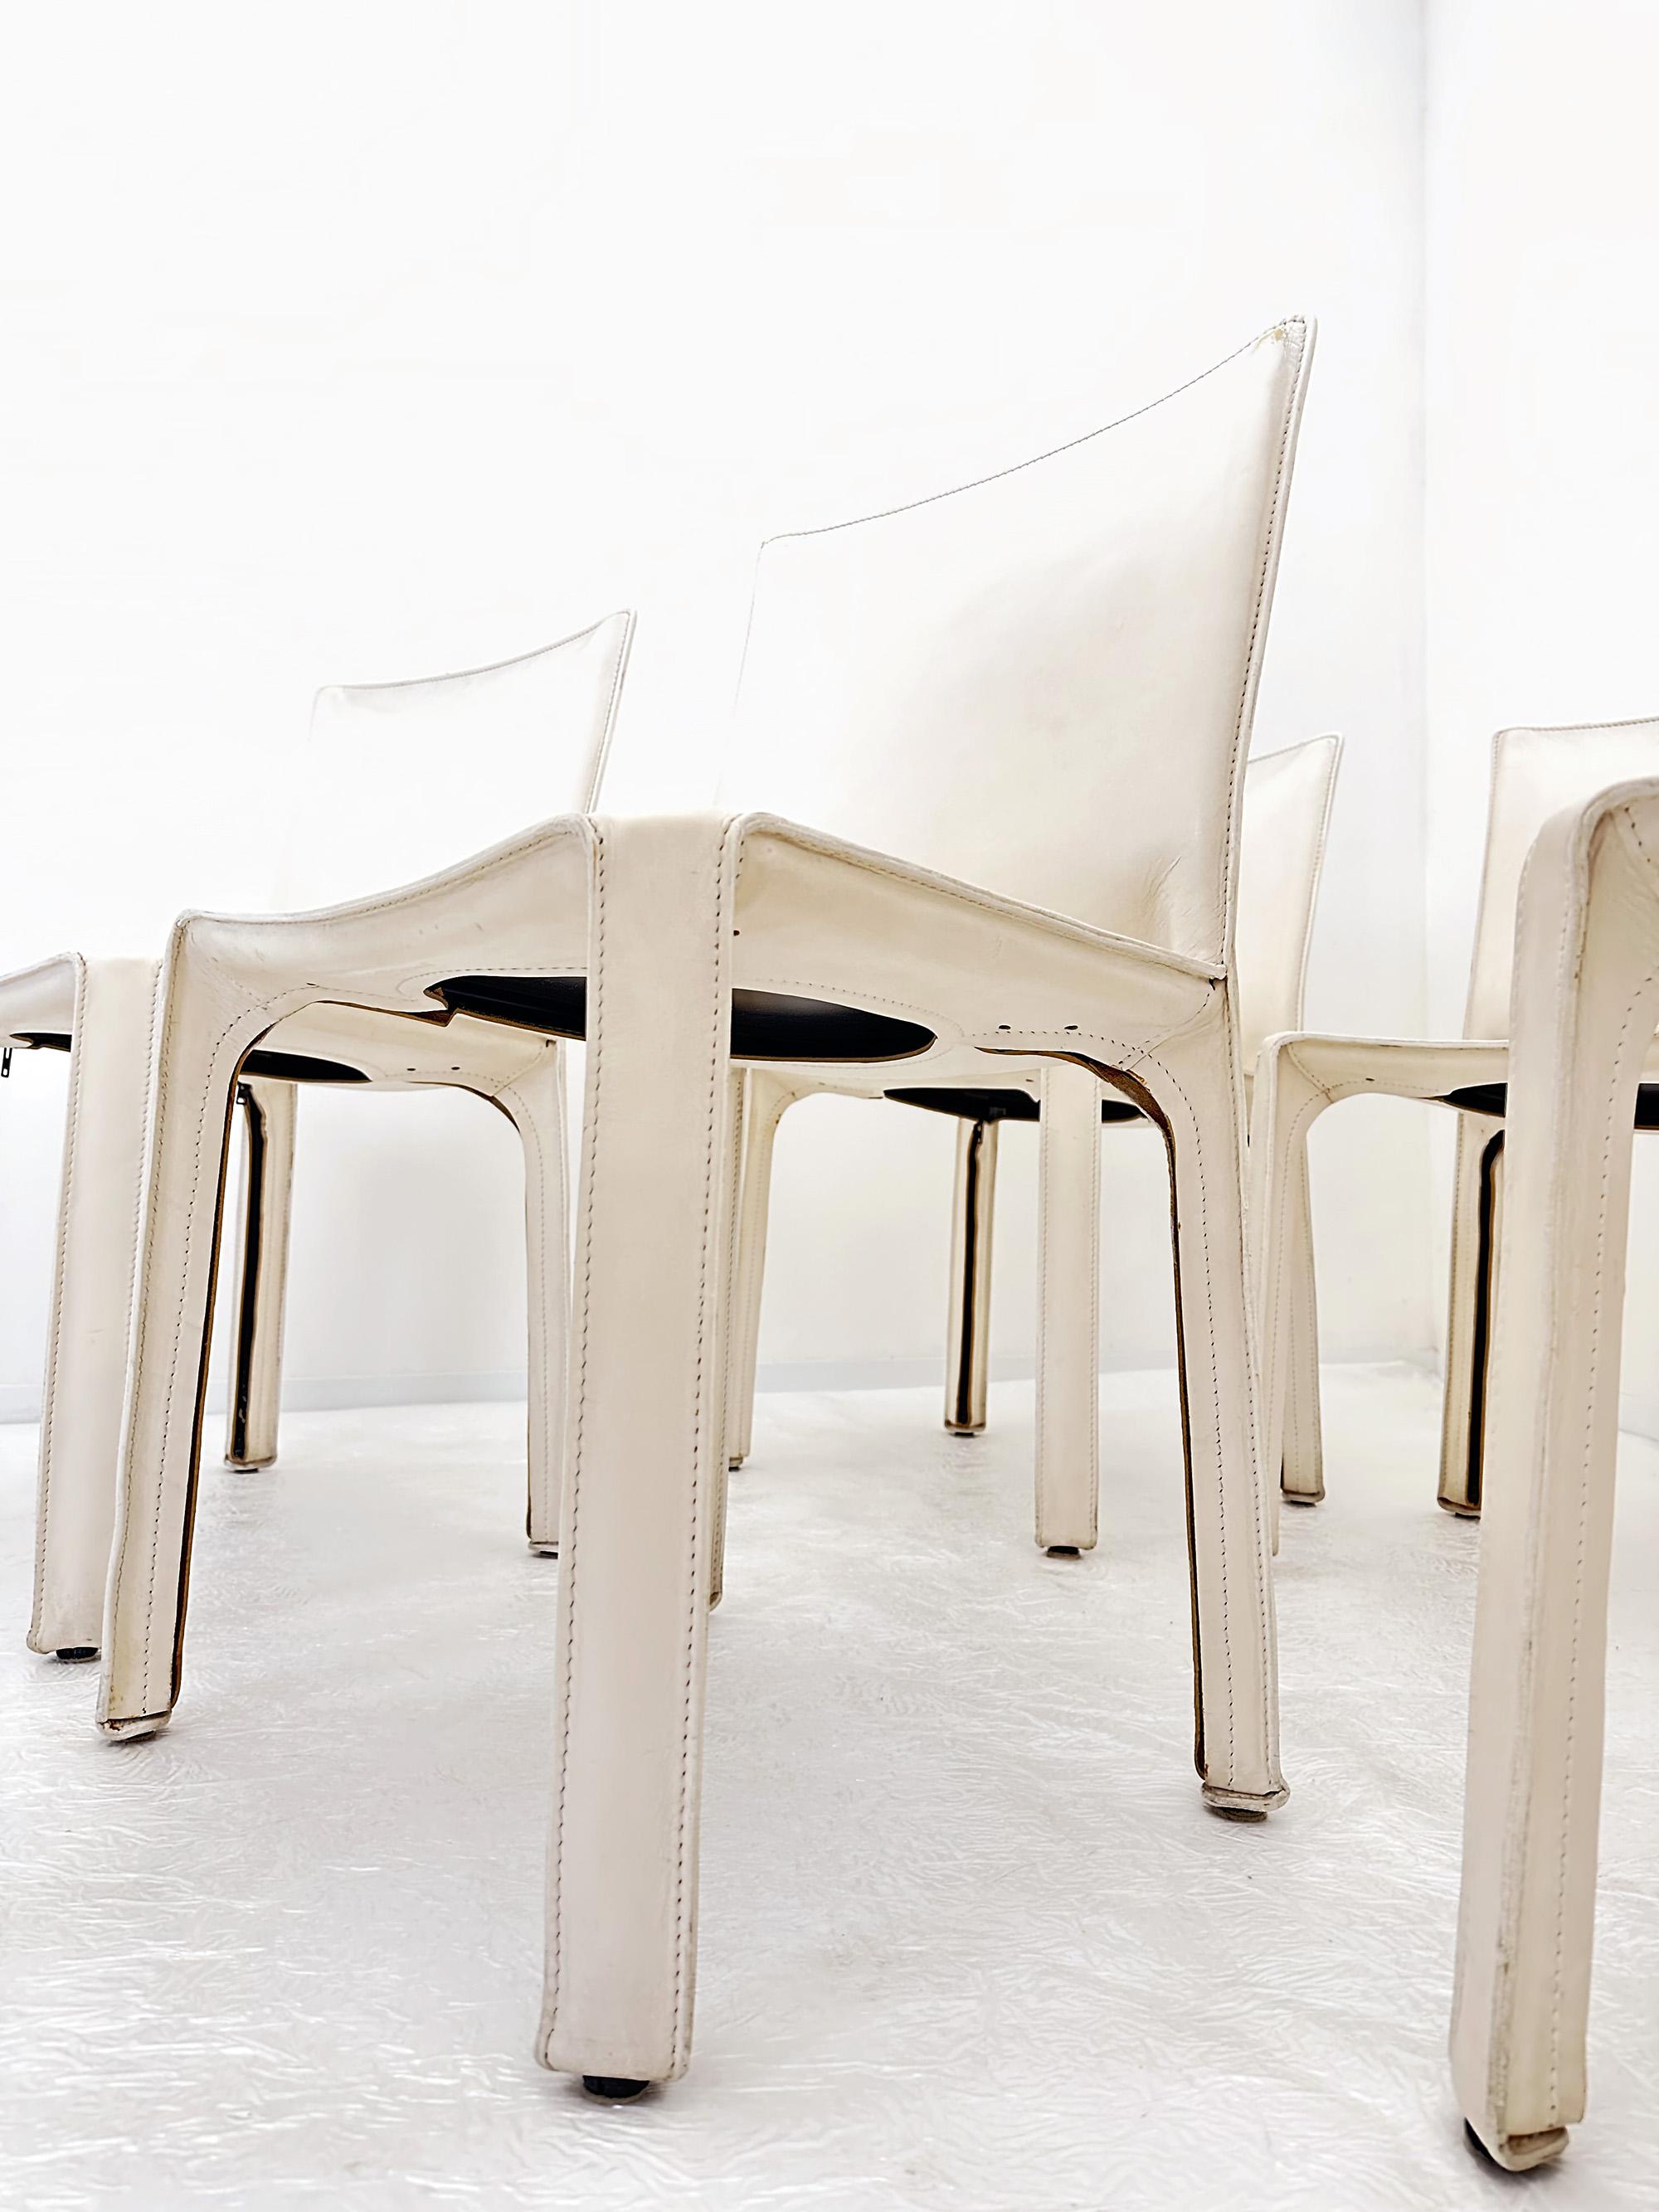 Les chaises Cab de Mario Bellini sont une pièce emblématique du design, produite par Cassina dans les années 1970.
Le cadre est en métal et est recouvert d'un cuir, ici d'une blancheur exquise. Tout au long du profil, des charnières permettent au